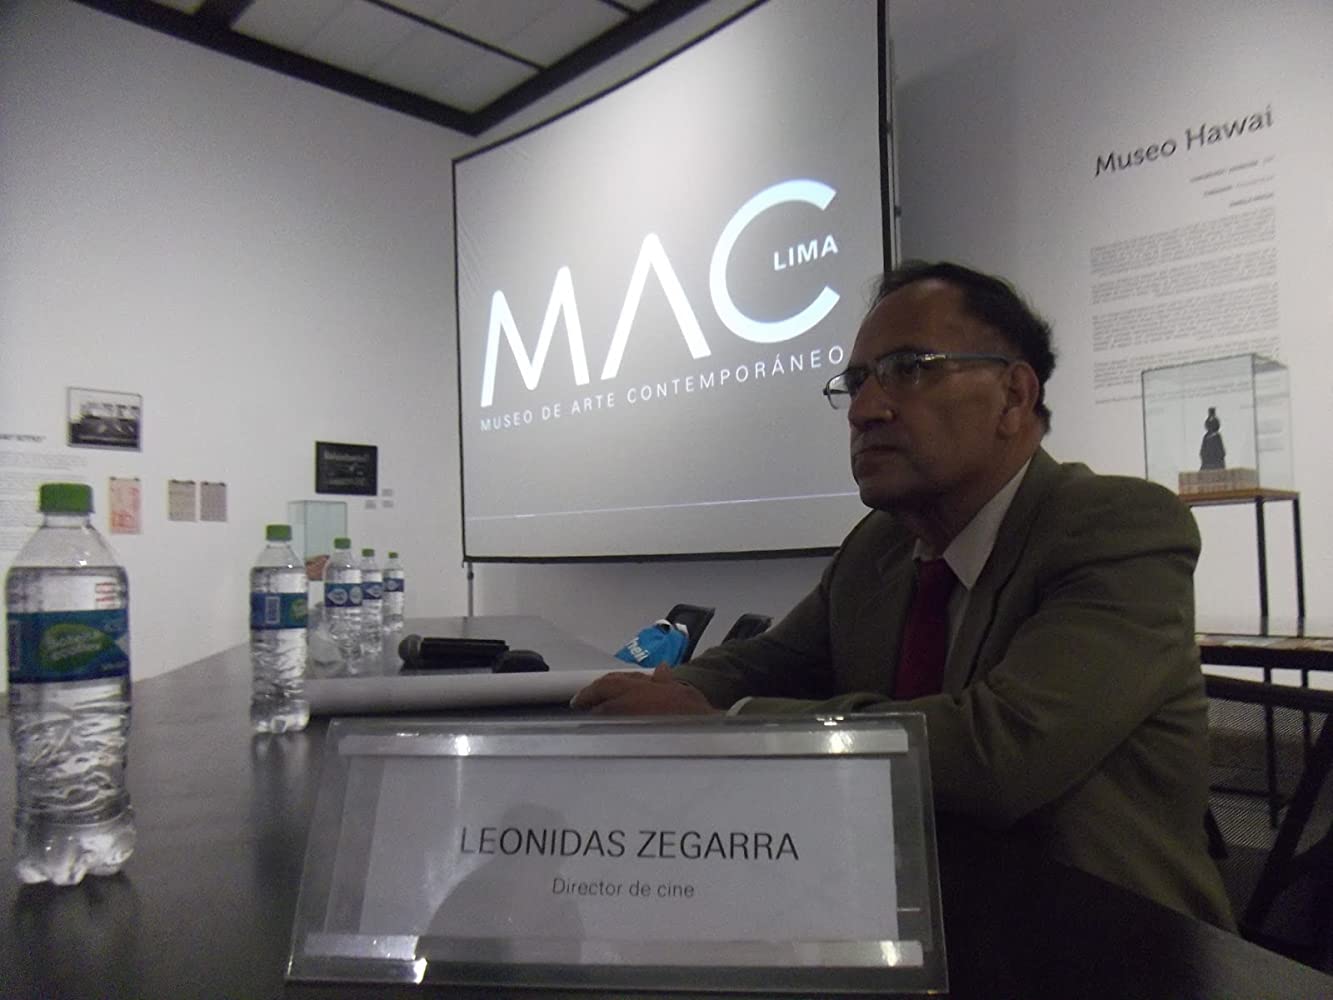 Finalmente, mi encuentro con Leonidas Zegarra (“El culto de los fracasados”, 30/12/2020)